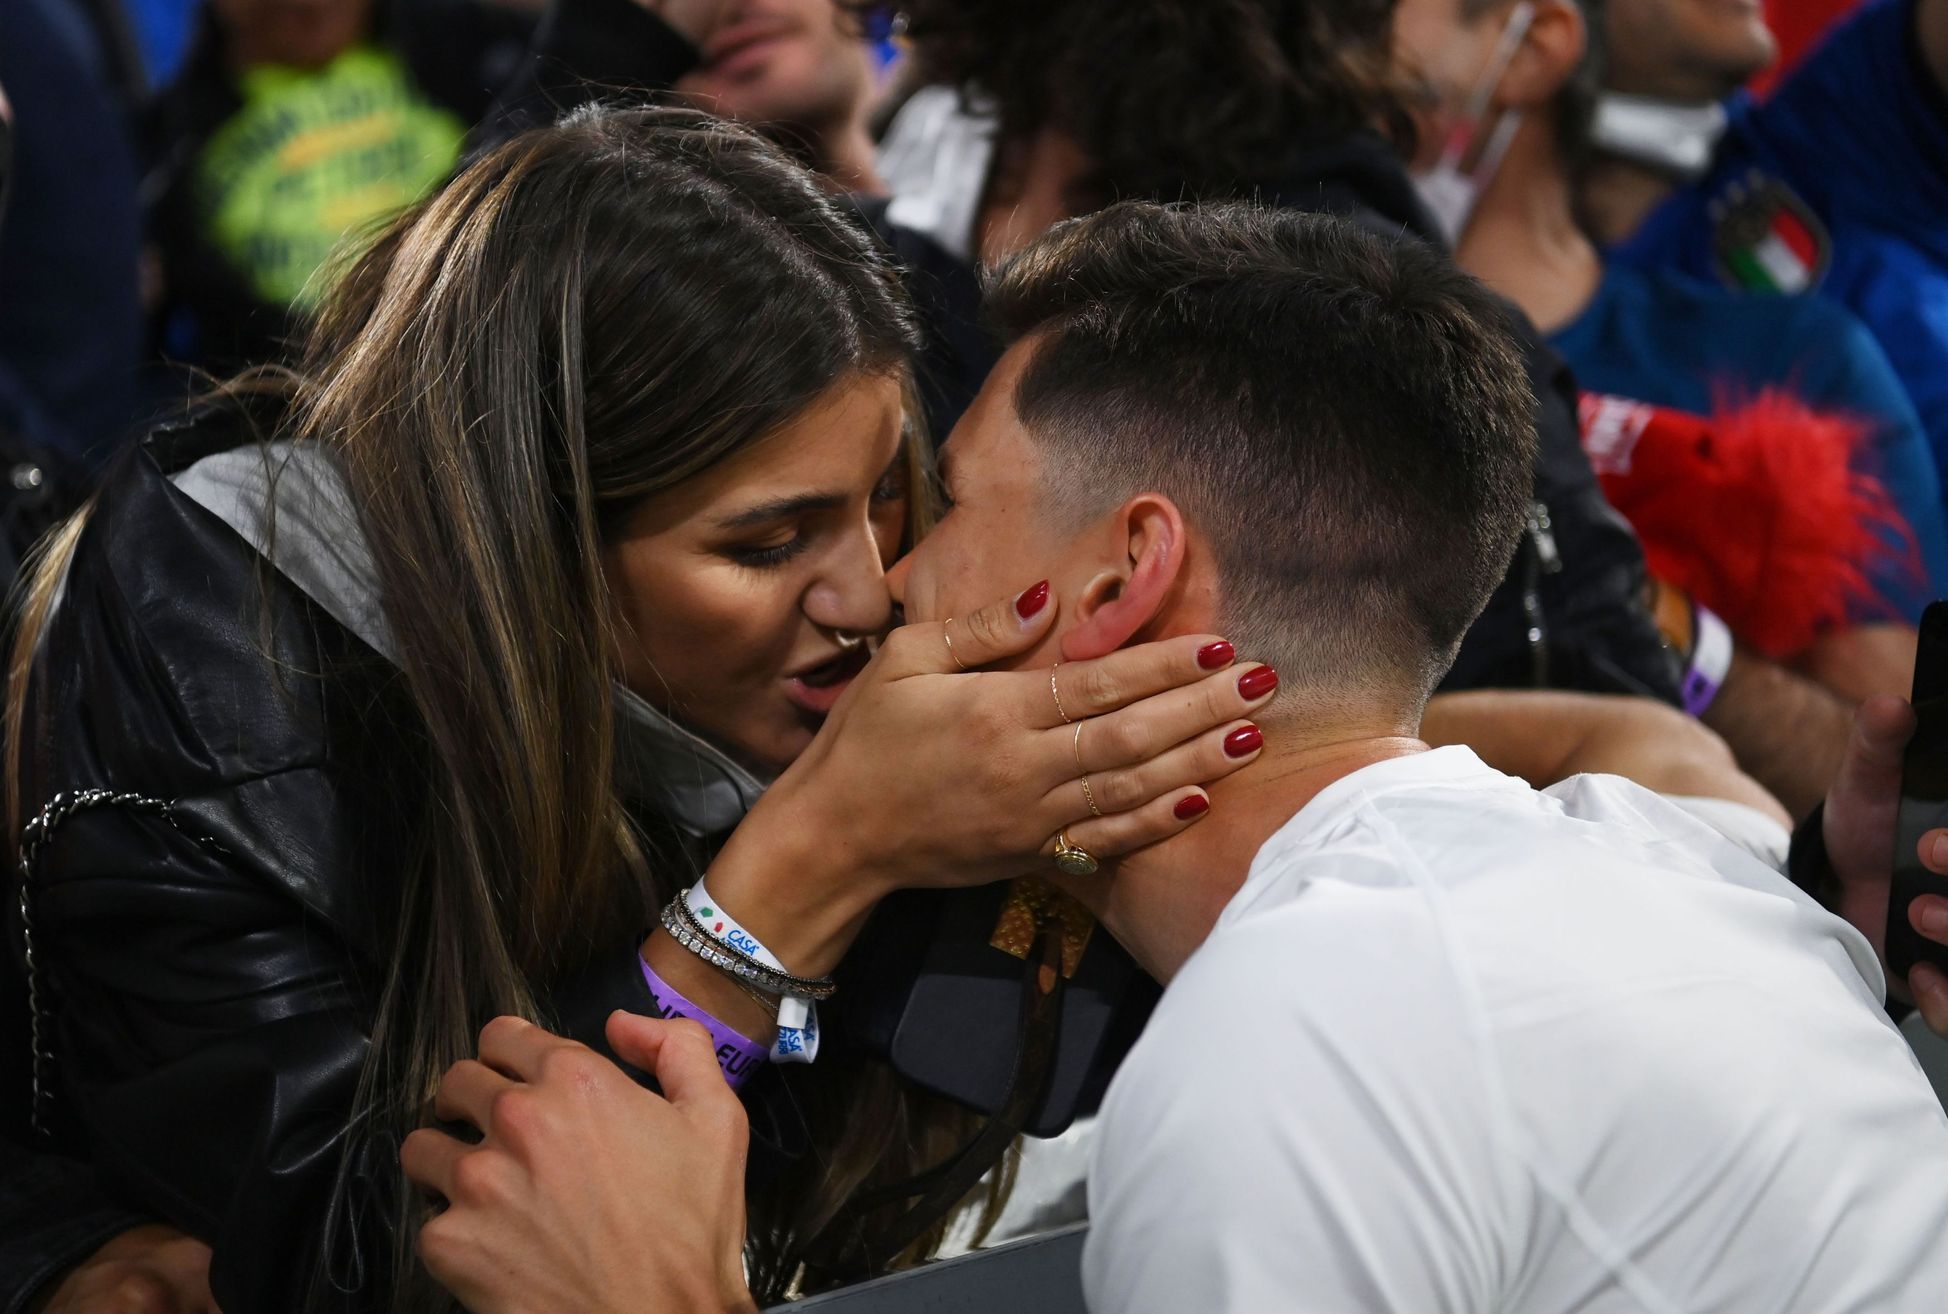 Il superbo tiro di Insigne spinge l’Italia in semifinale, Lukaku finisce in ginocchio